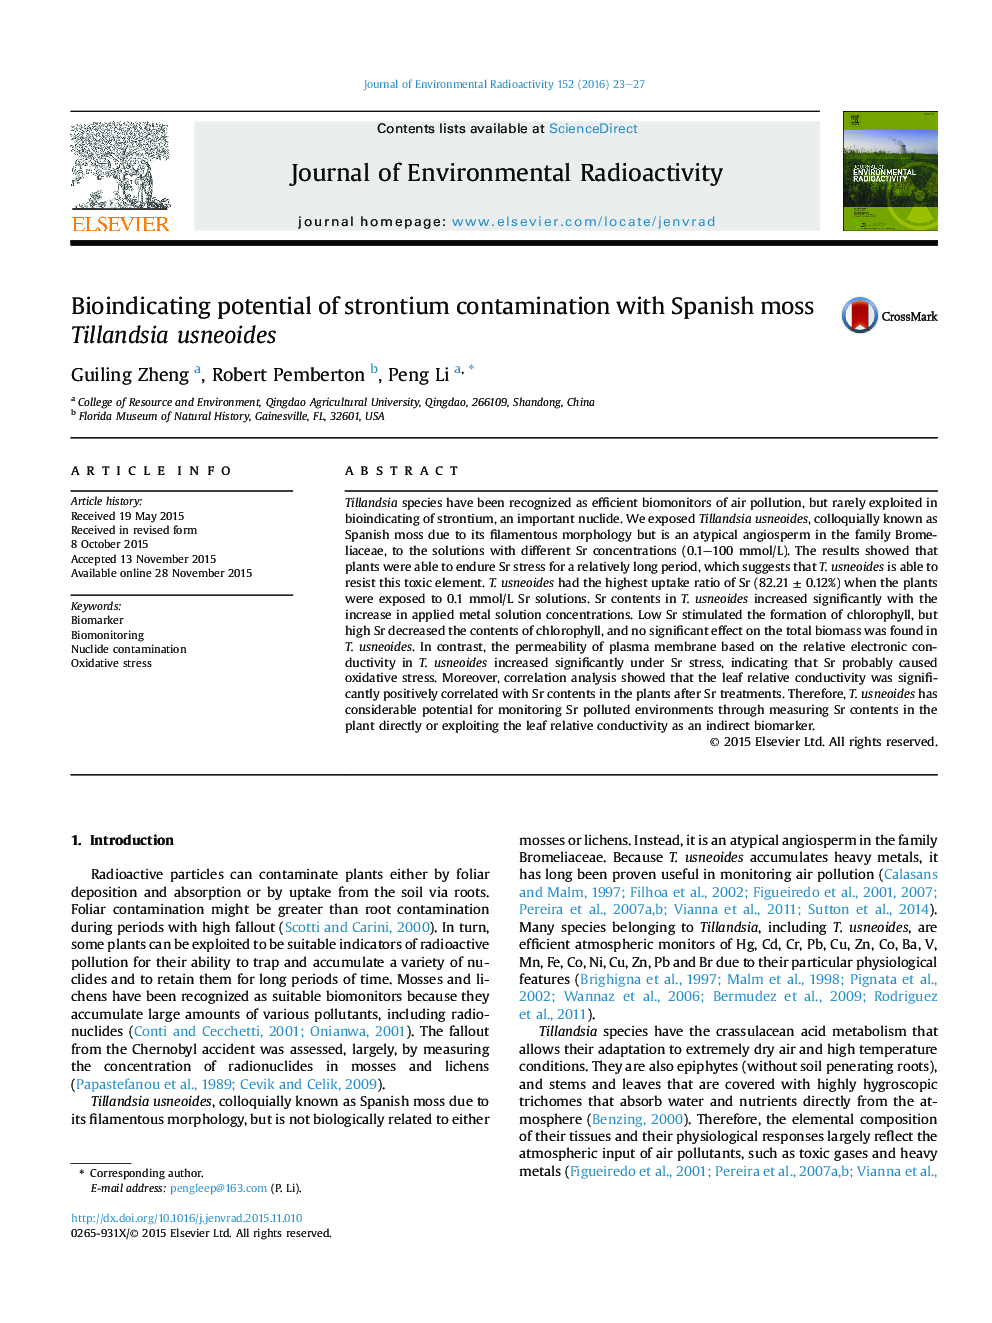 پتانسیل نشان زیستی آلودگی استرانسیوم با usneoides Tillandsia خزه اسپانیایی 